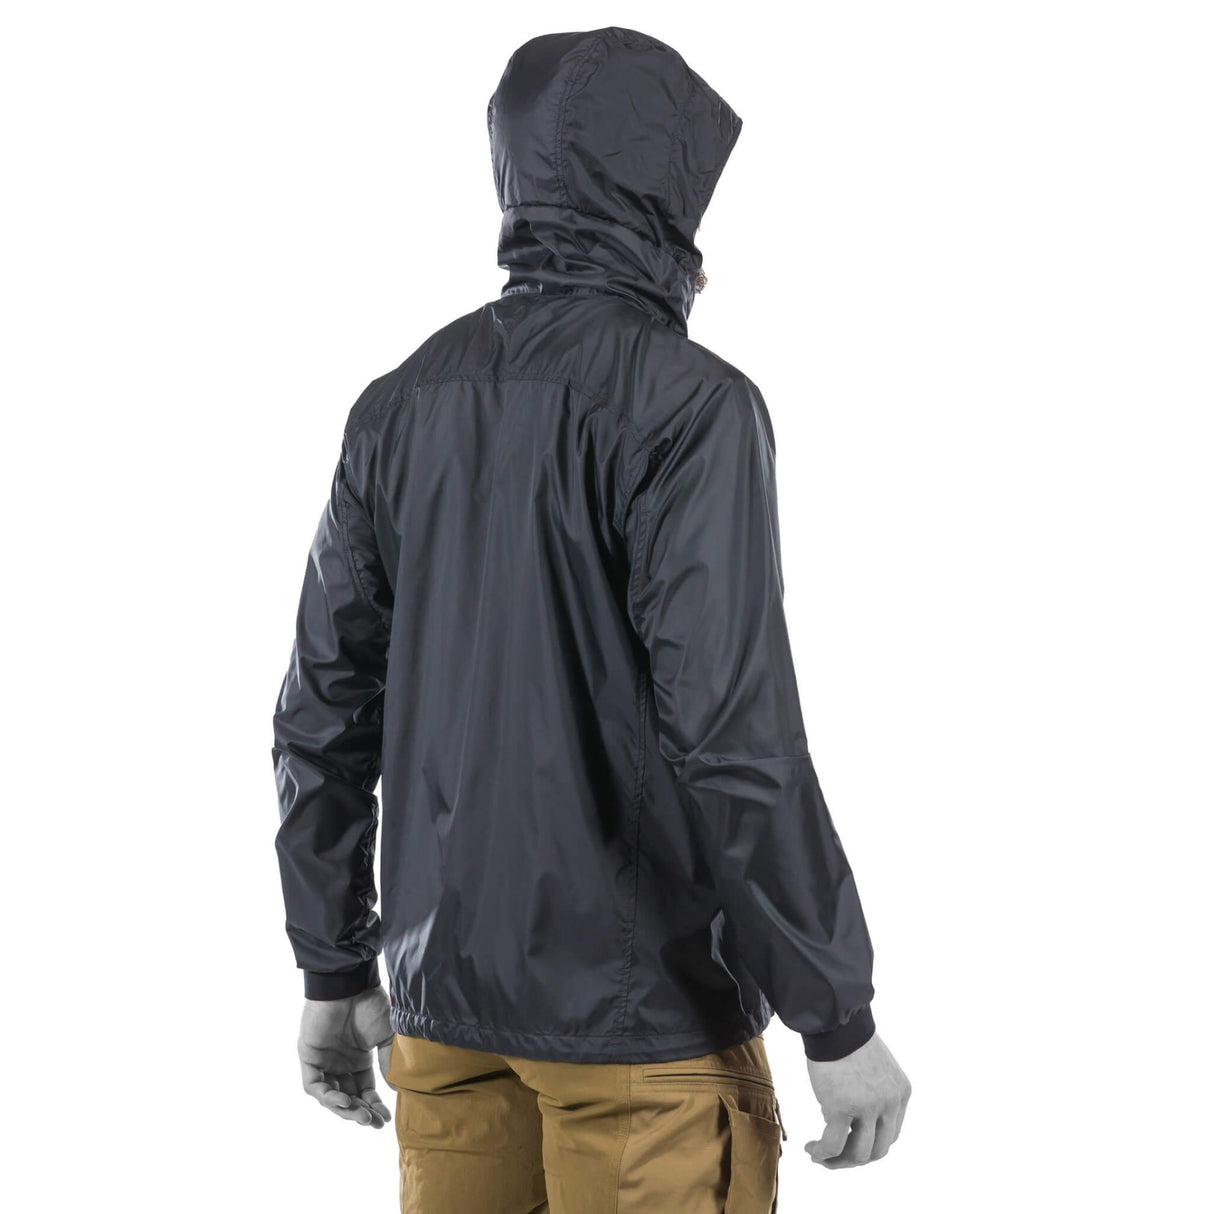 Customizable Hood Coverage: Adjustable hood and visor for optimal protection.